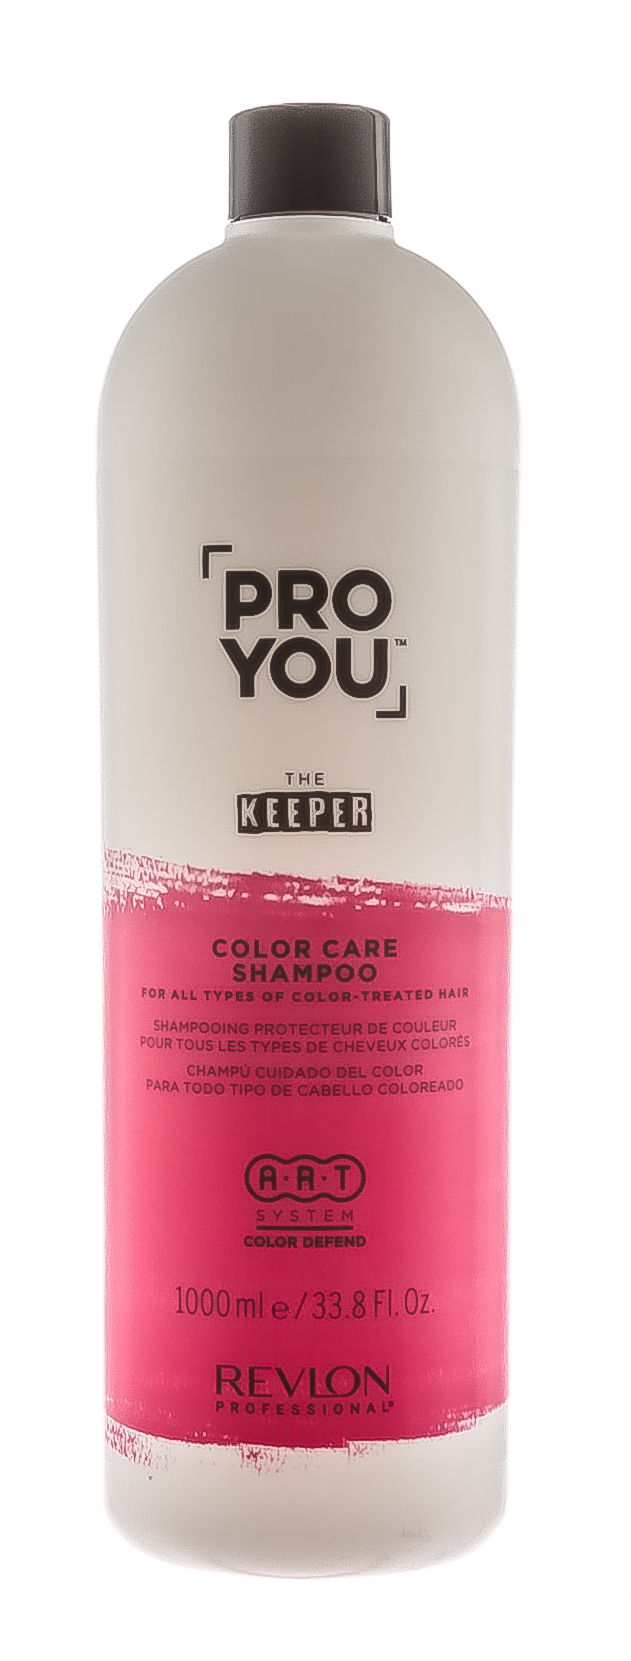 Купить Revlon Professional Шампунь защита цвета для всех типов окрашенных волос Color Care Shampoo, 1000 мл (Revlon Professional, Pro You), США